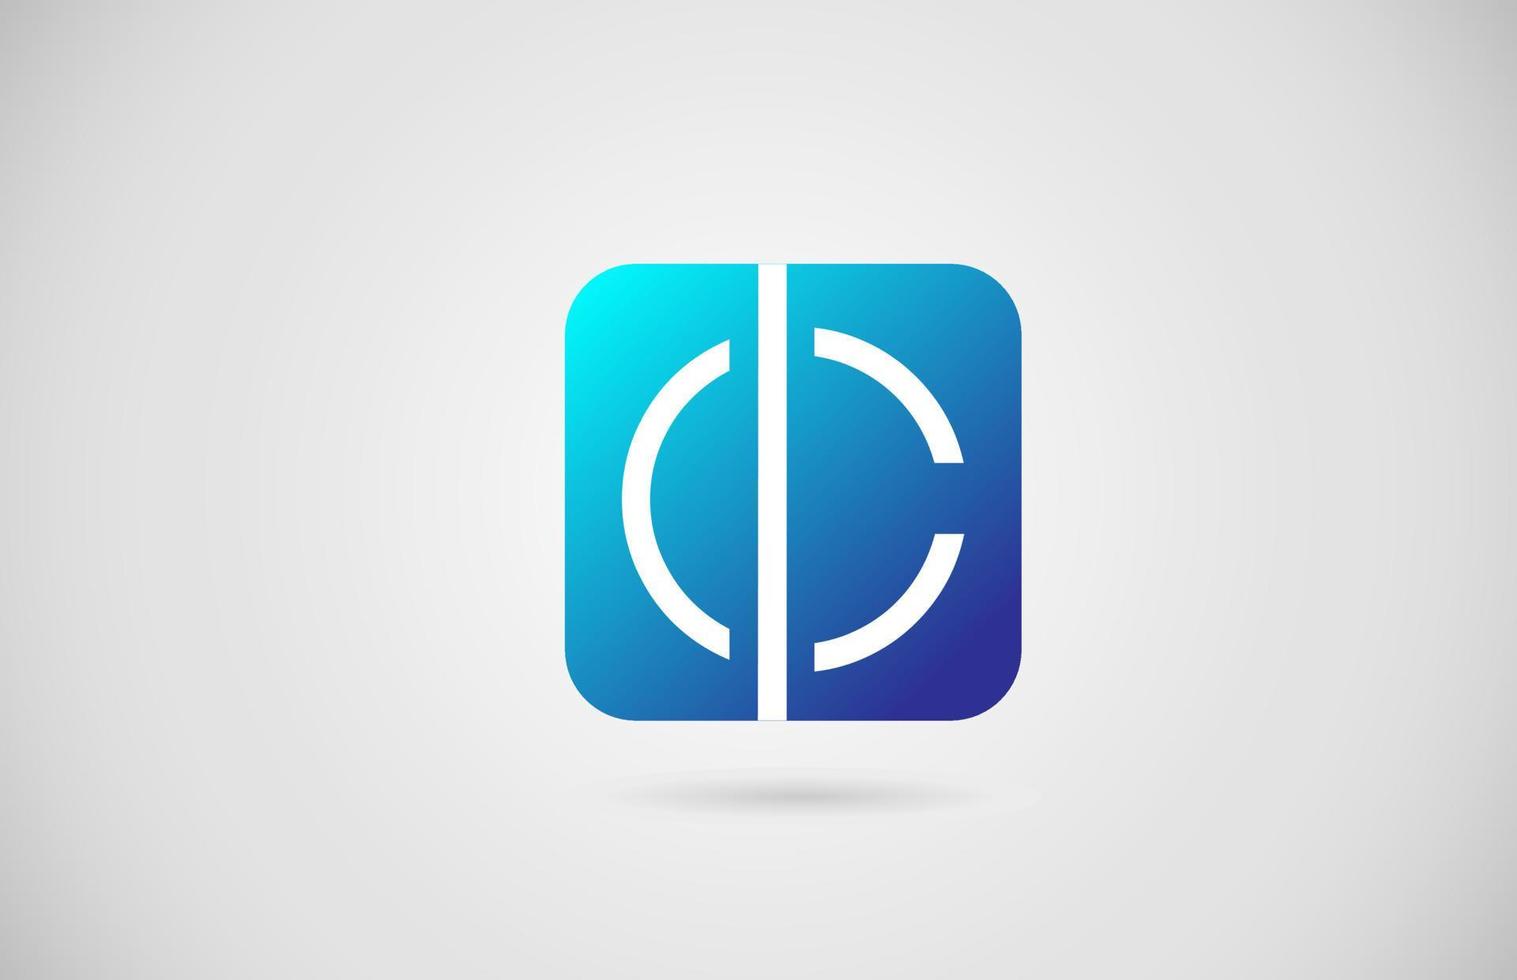 C icono de logotipo de letra del alfabeto. diseño creativo para empresa y negocio vector